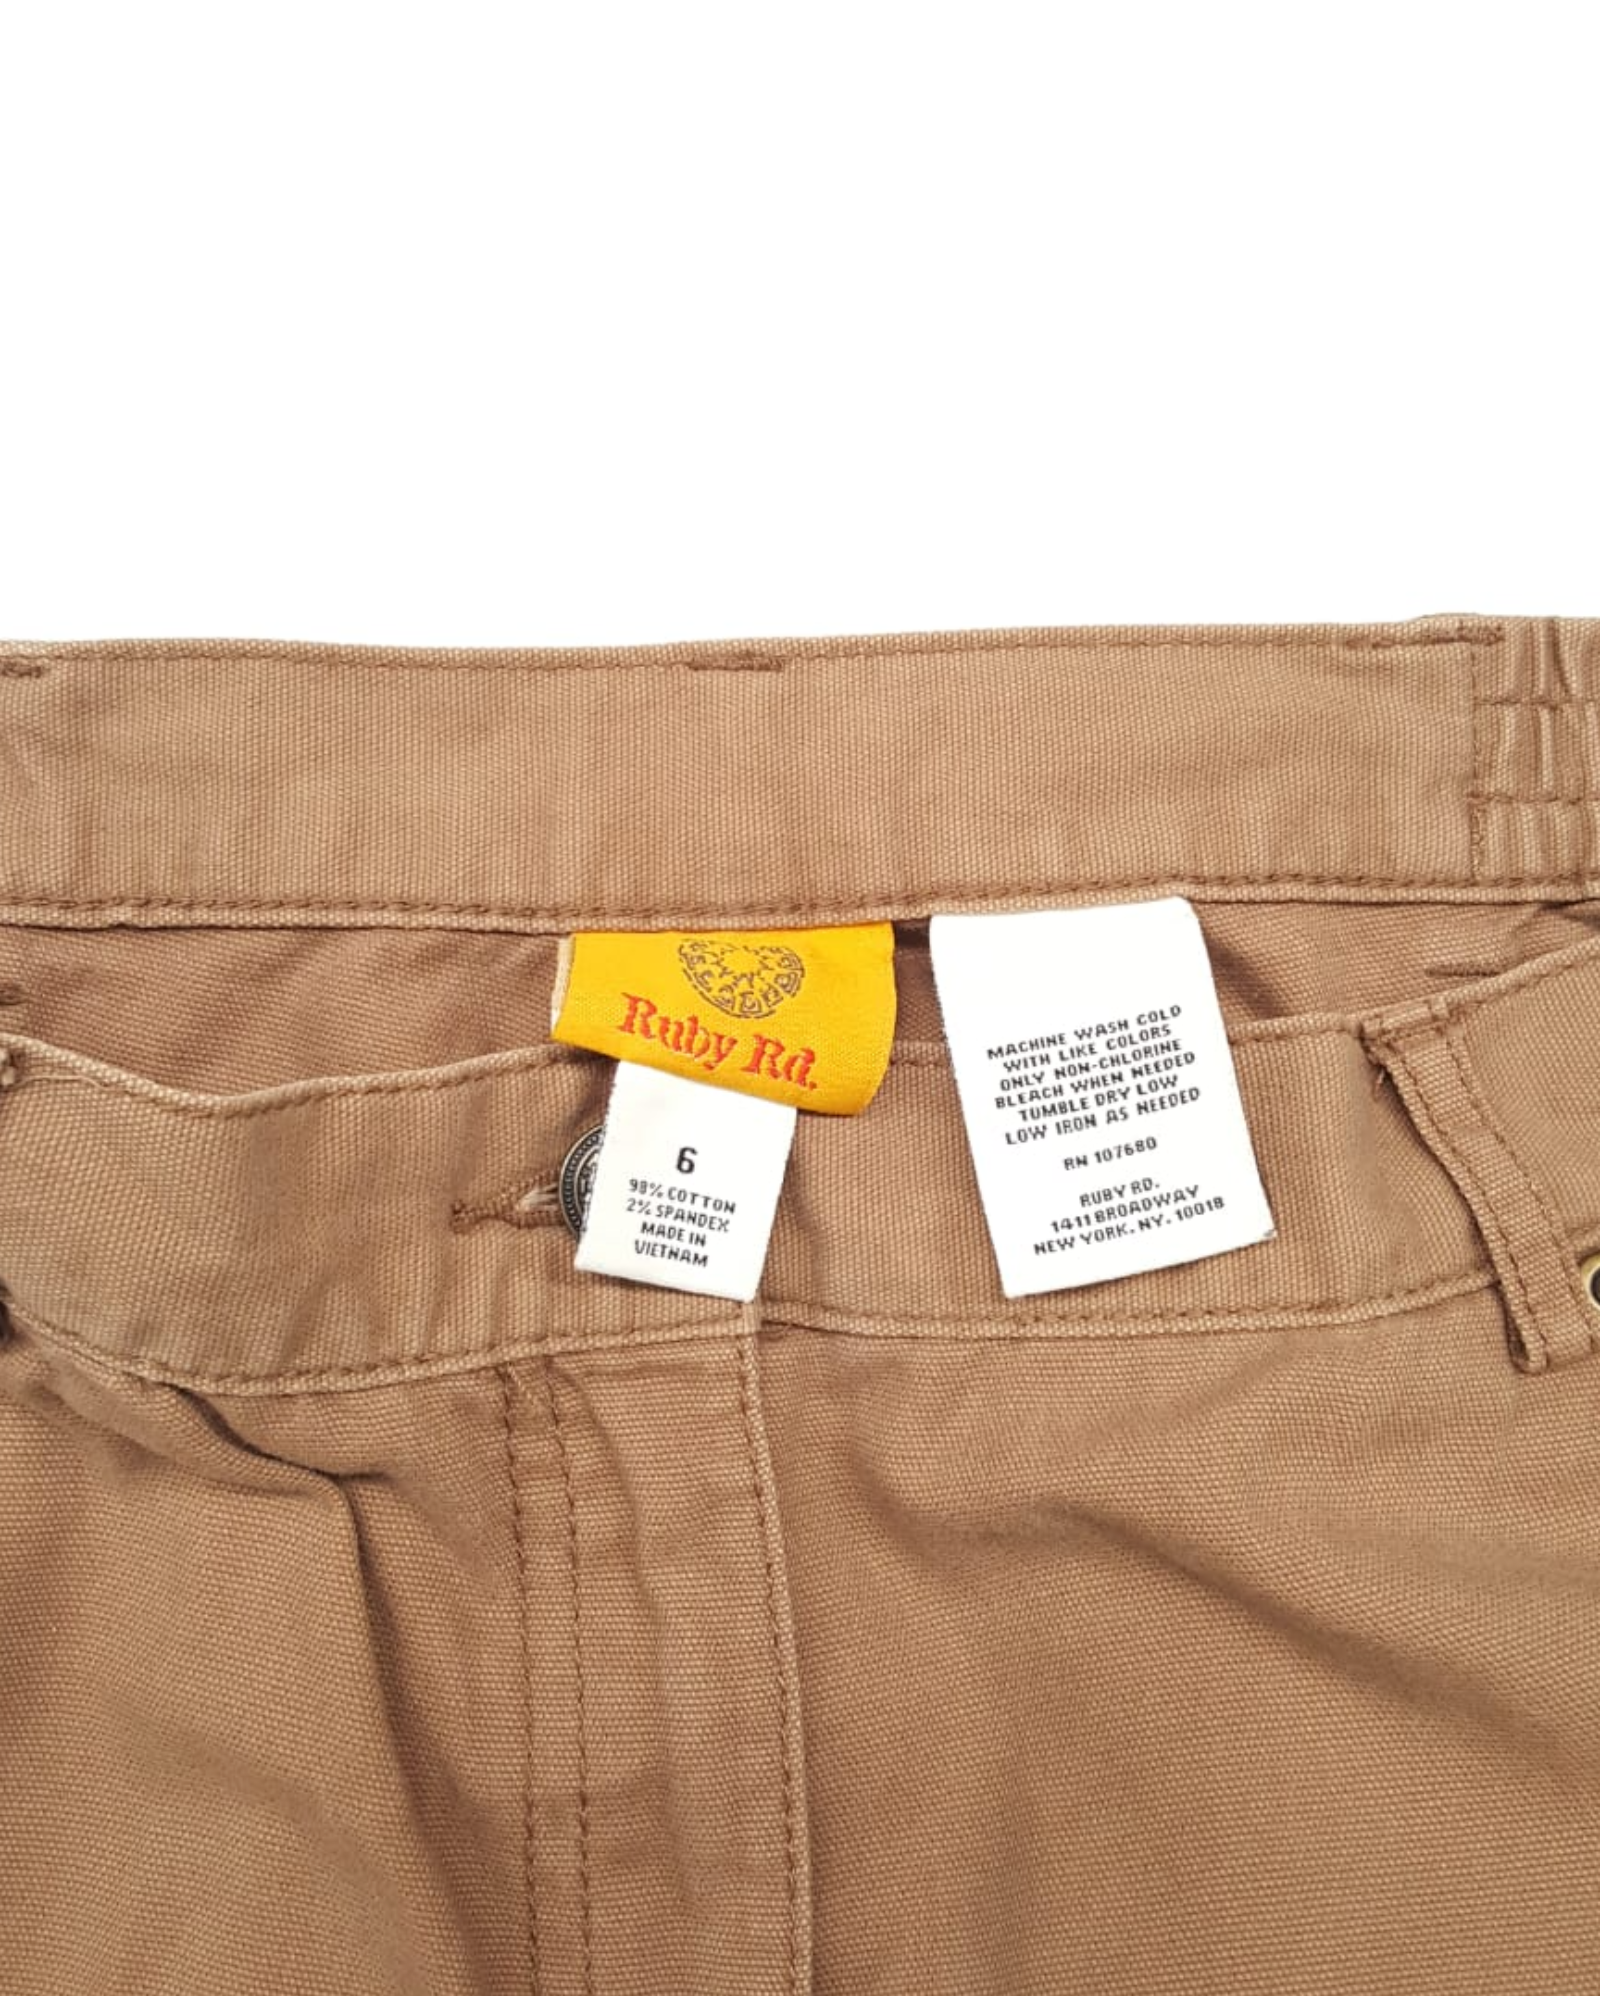 Pantalones Chinos Ruby Rd 3